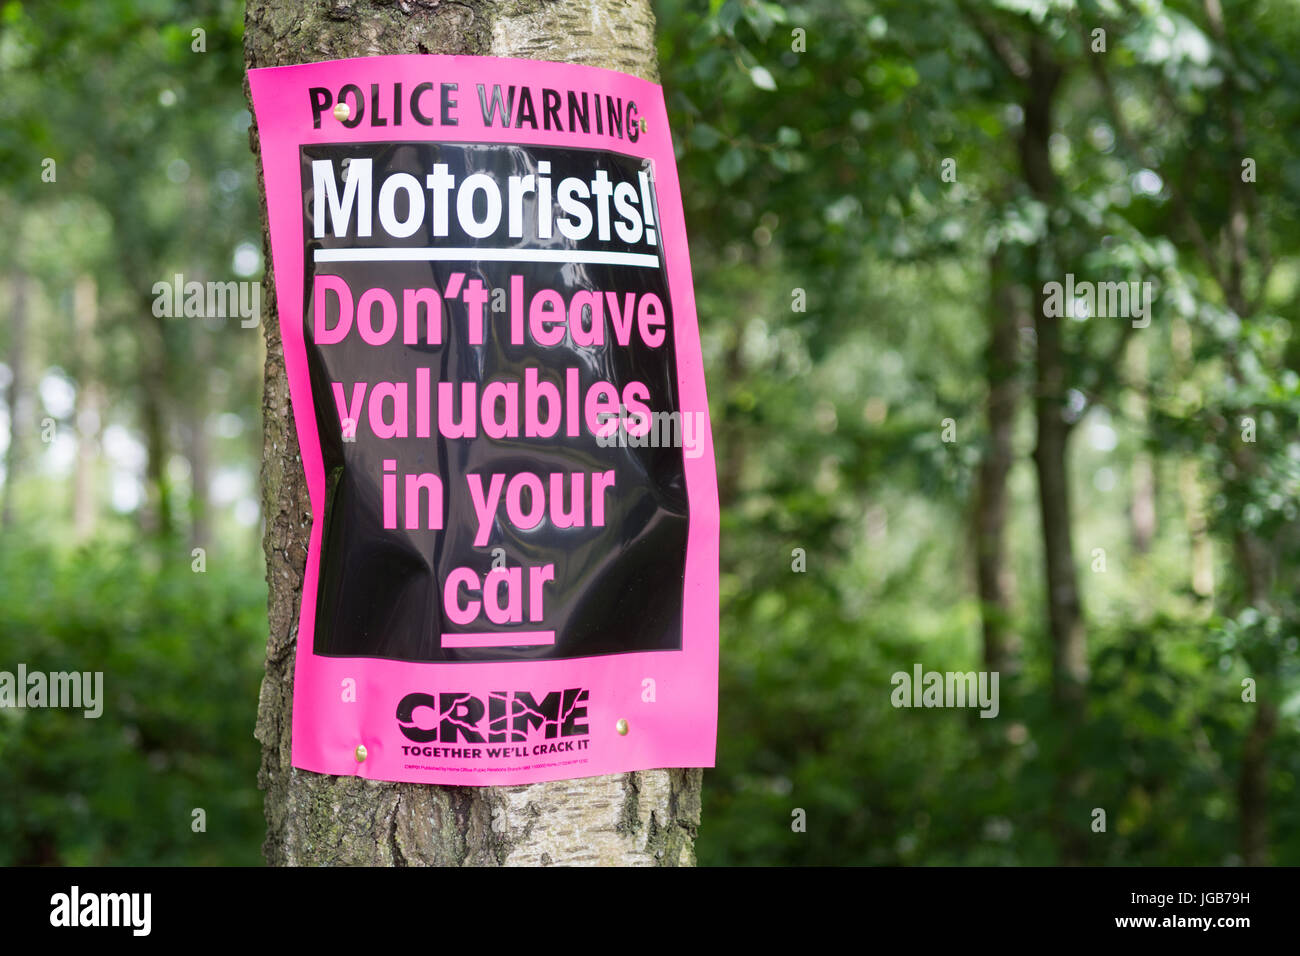 Les automobilistes ne laissez pas vos objets de valeur dans votre voiture panneau d'avertissement de la police Banque D'Images